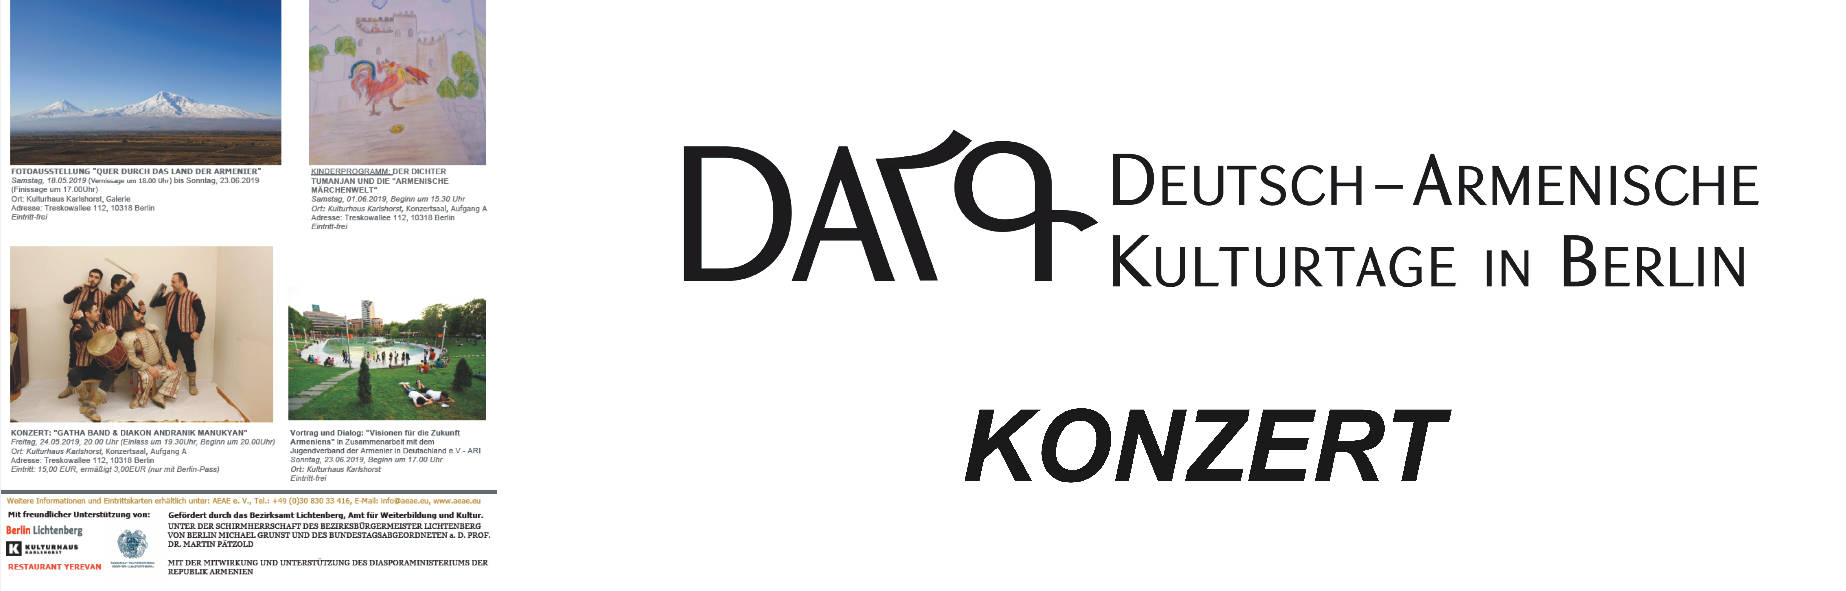 KONZERT DES ENSEMBLES "GATHA BAND & DIAKON ANDRANIK MANUKYAN" AM 24.05.2019